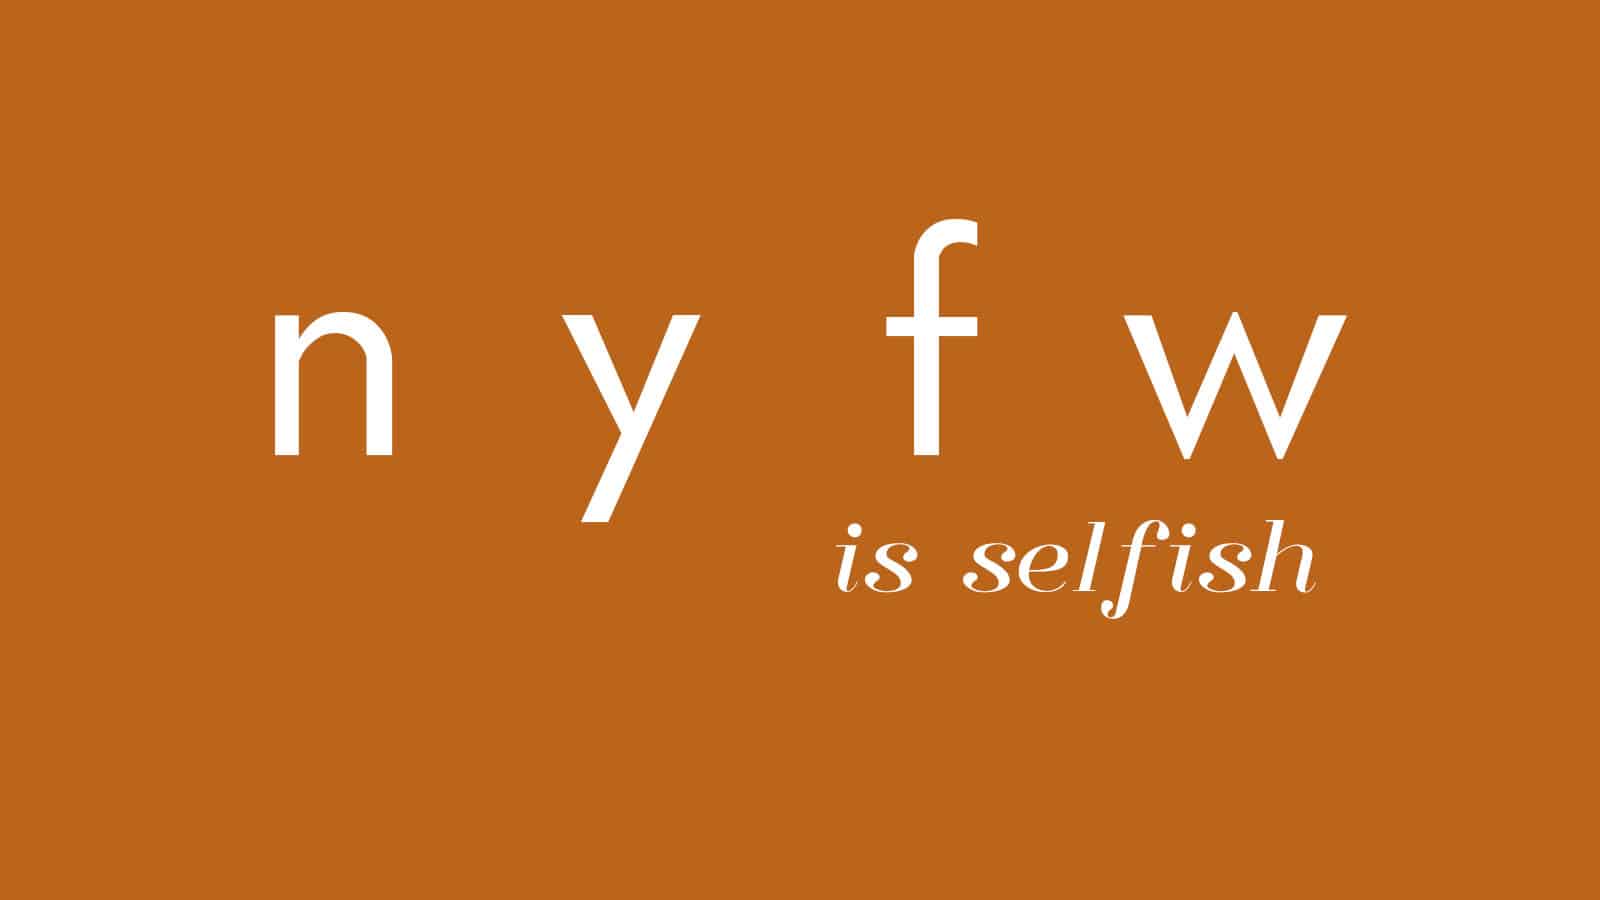 NYFW is selfish.